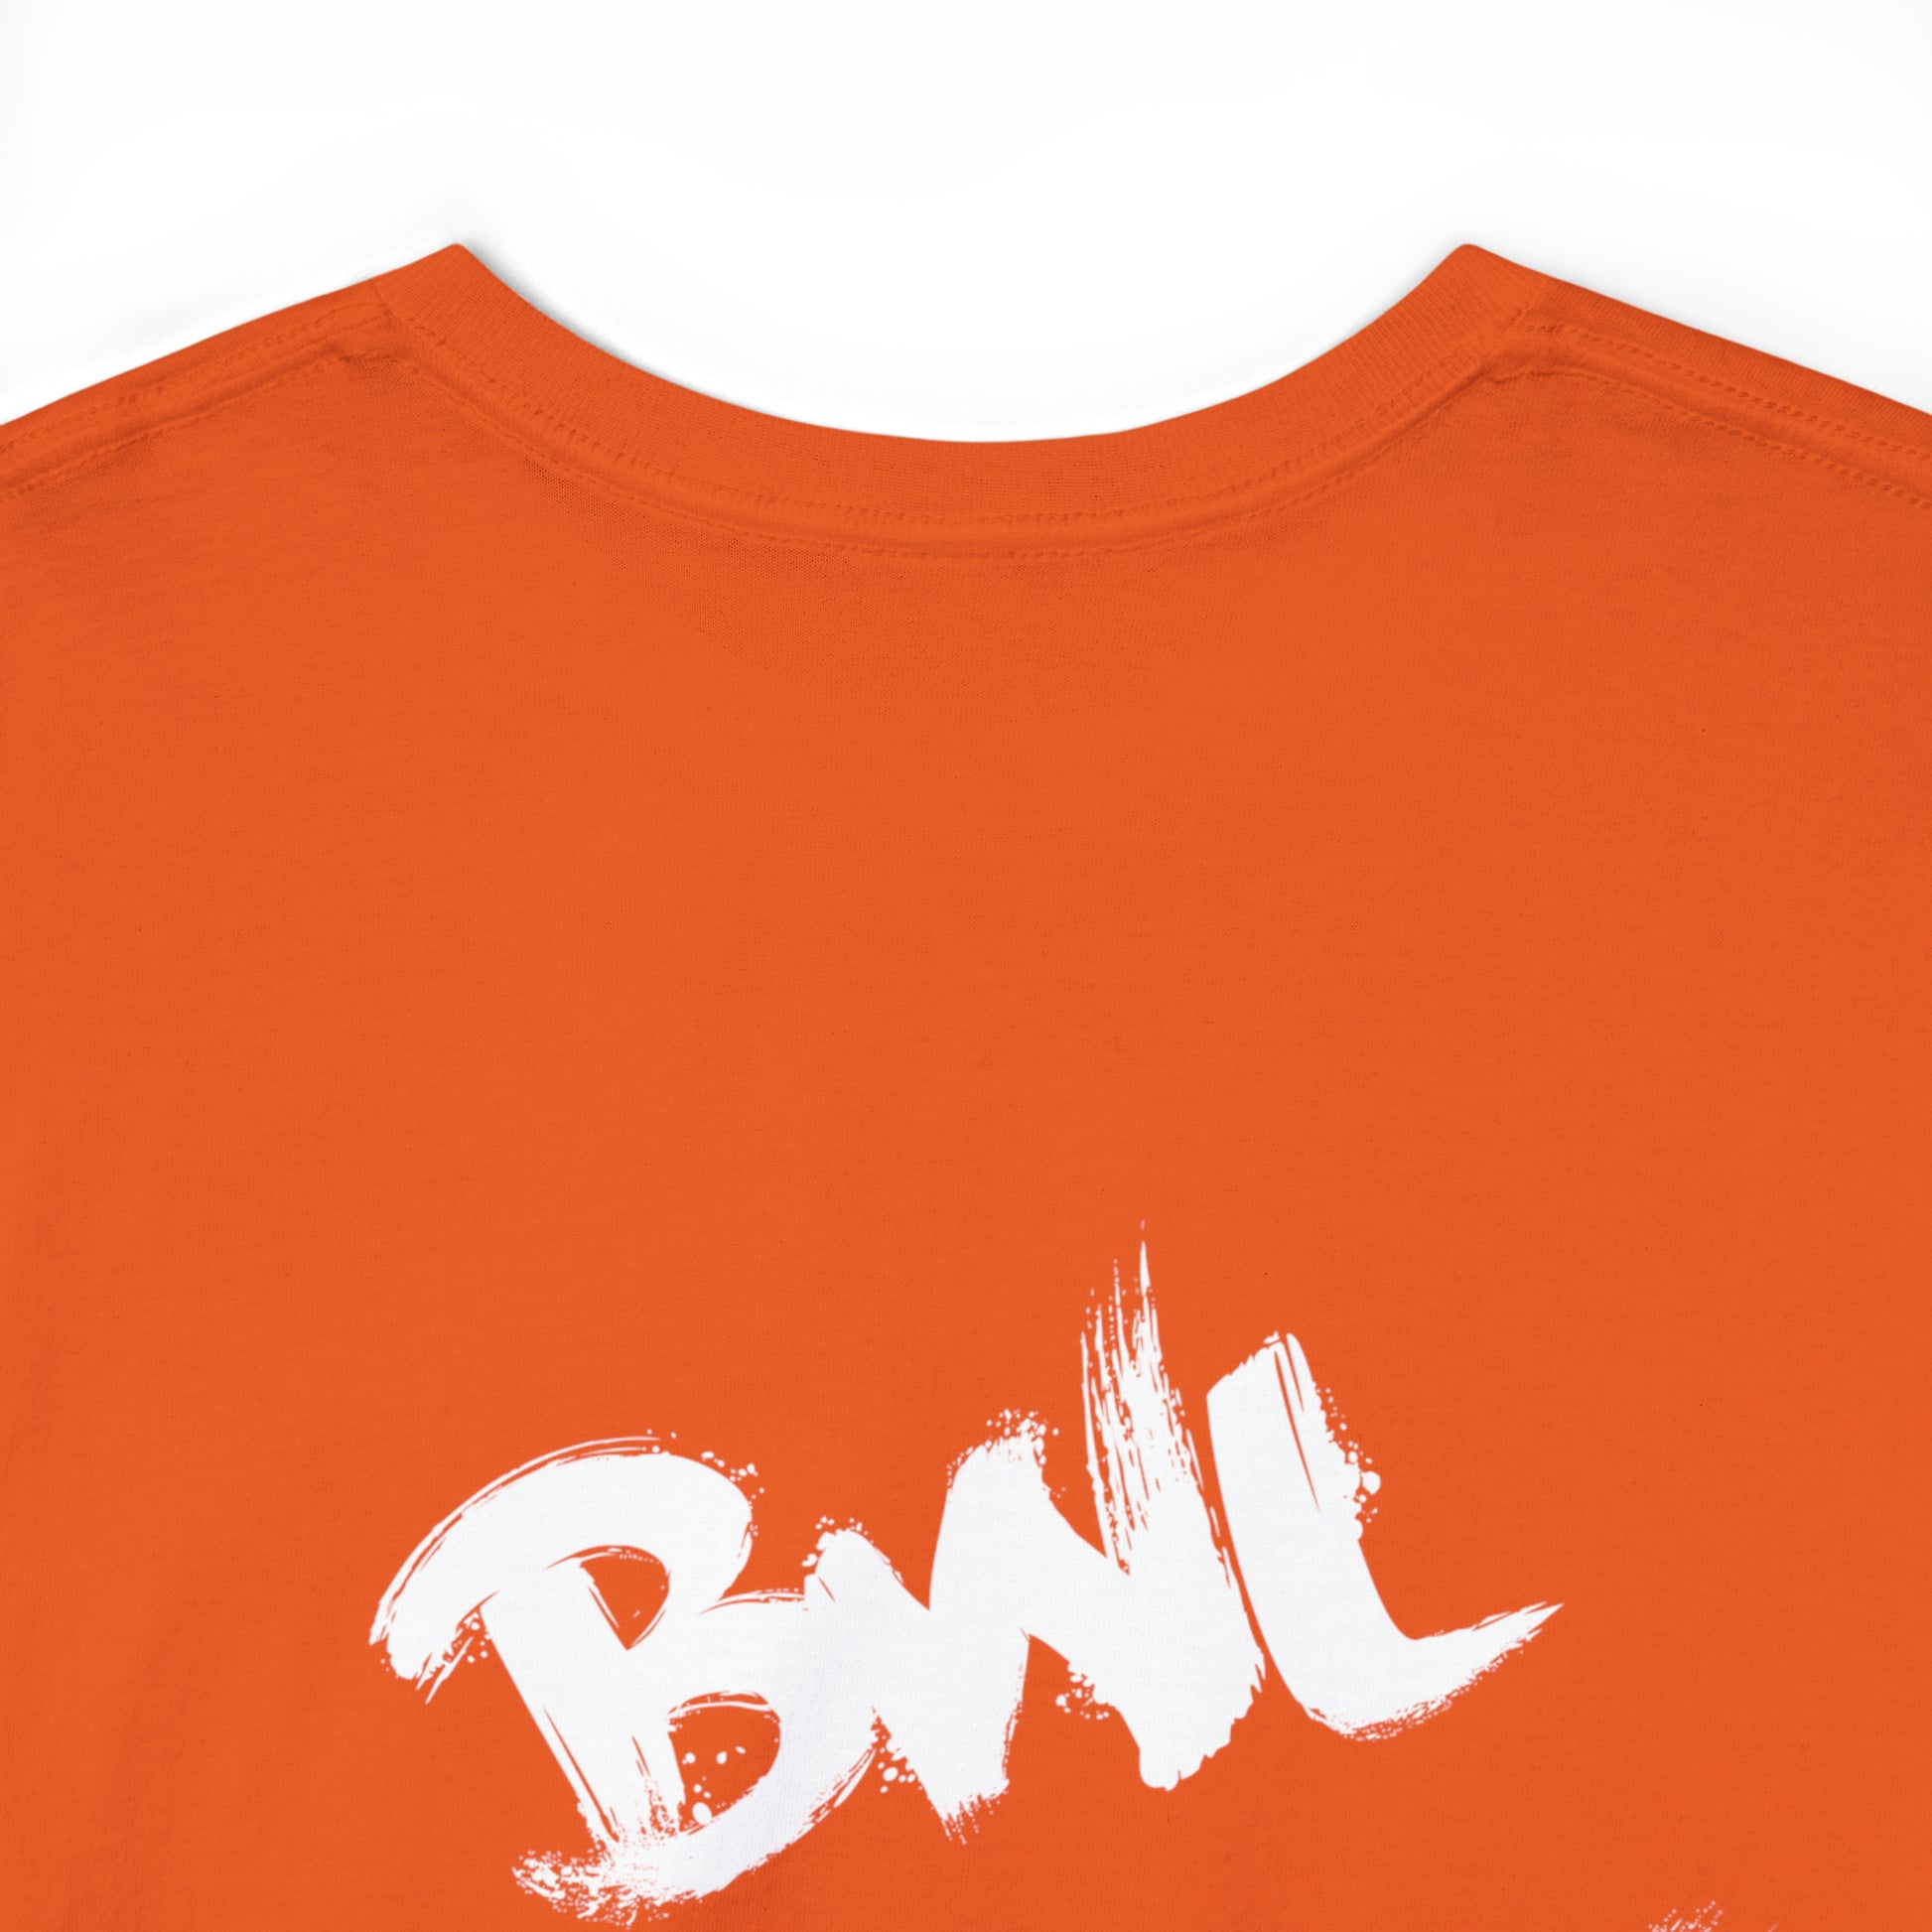 BWL, Rolex, Por$che, Ralph Lauren | Highperformer Shirt - BWL.Breitseite